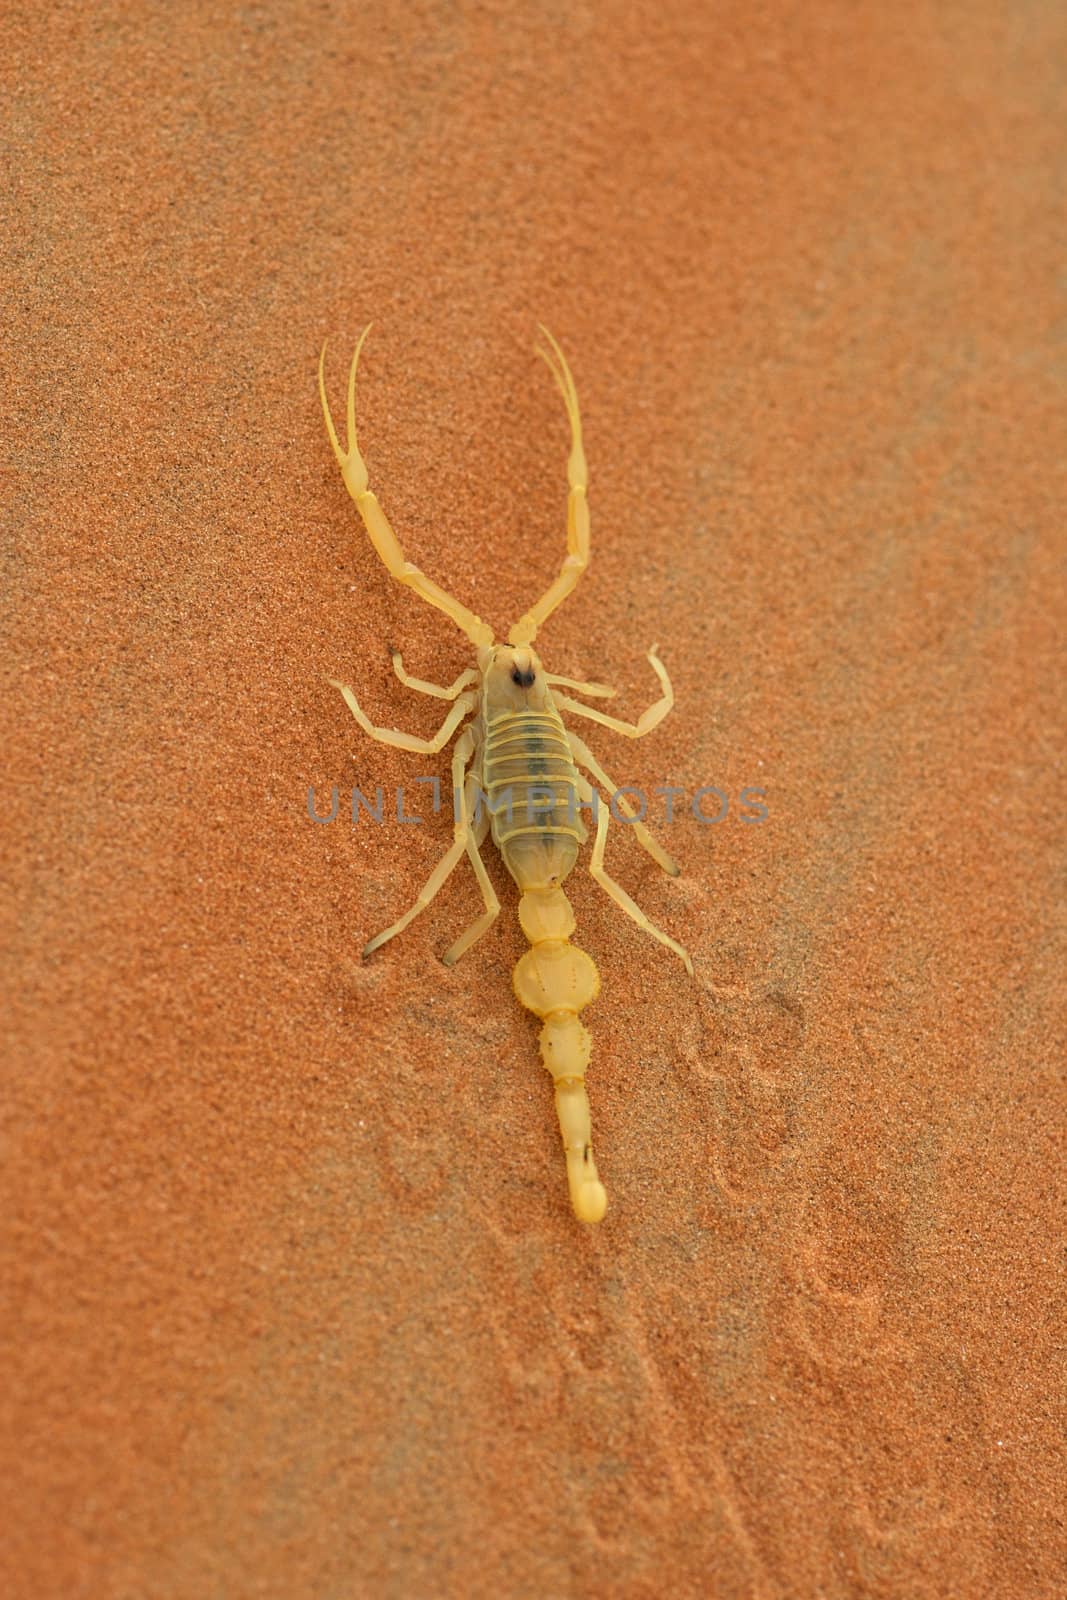 Arabian Scorpion by zambezi